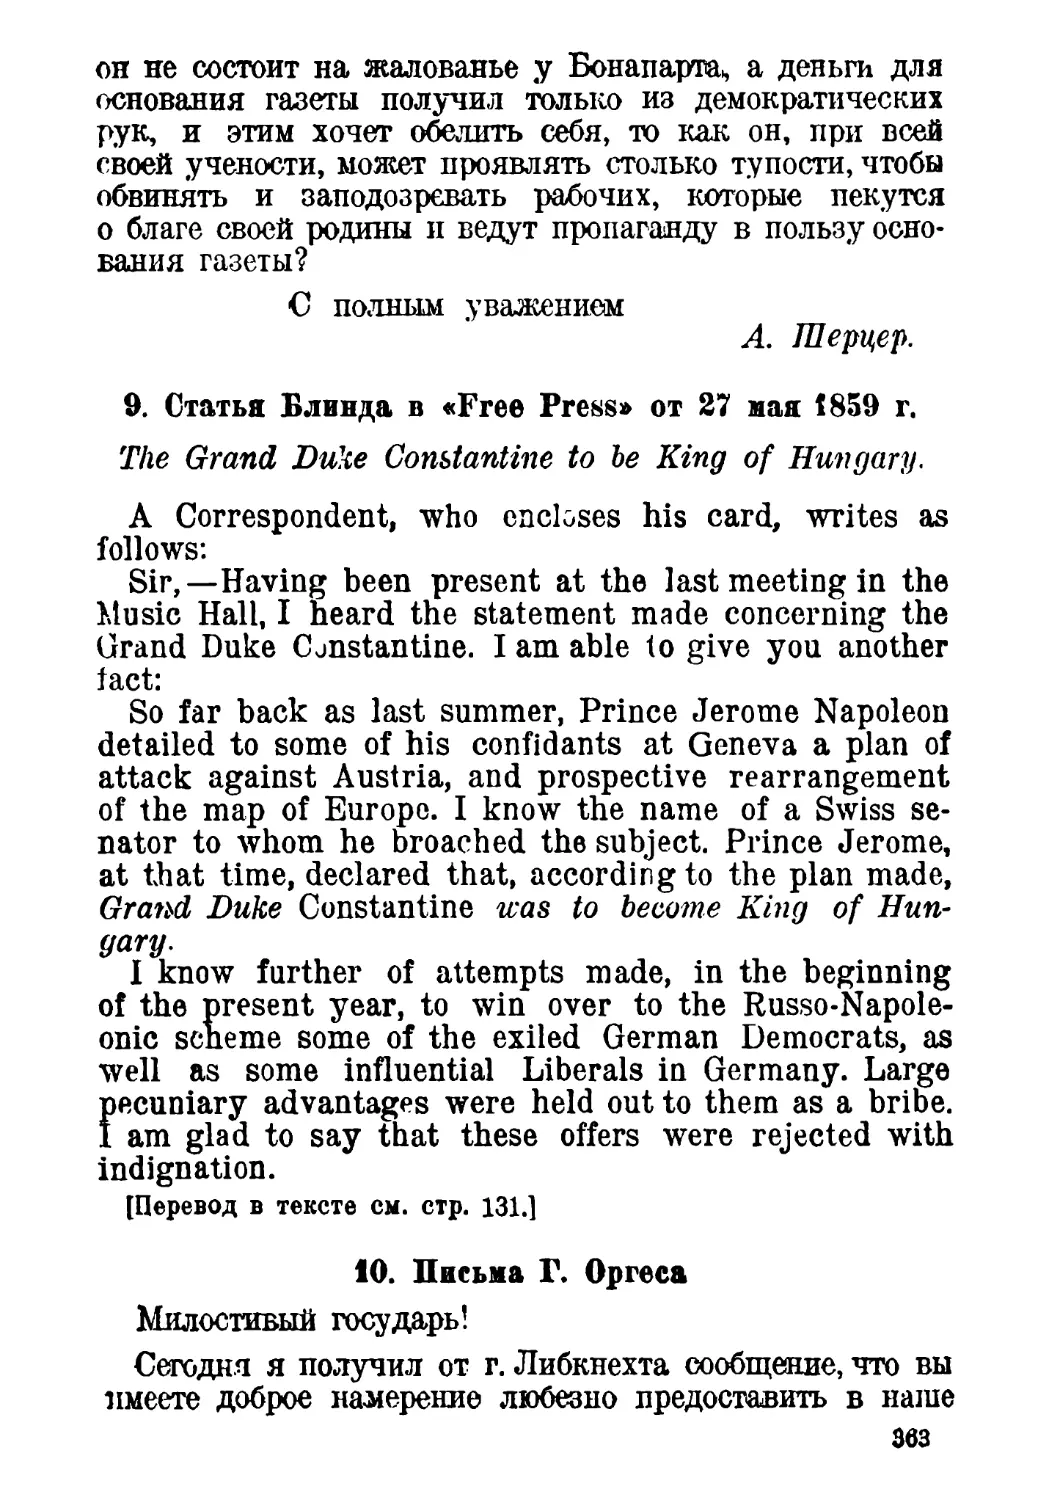 9. Статья Блинда в «Free Press» от 27 мая 1859 г.
10. Письмо Г. Оргеса